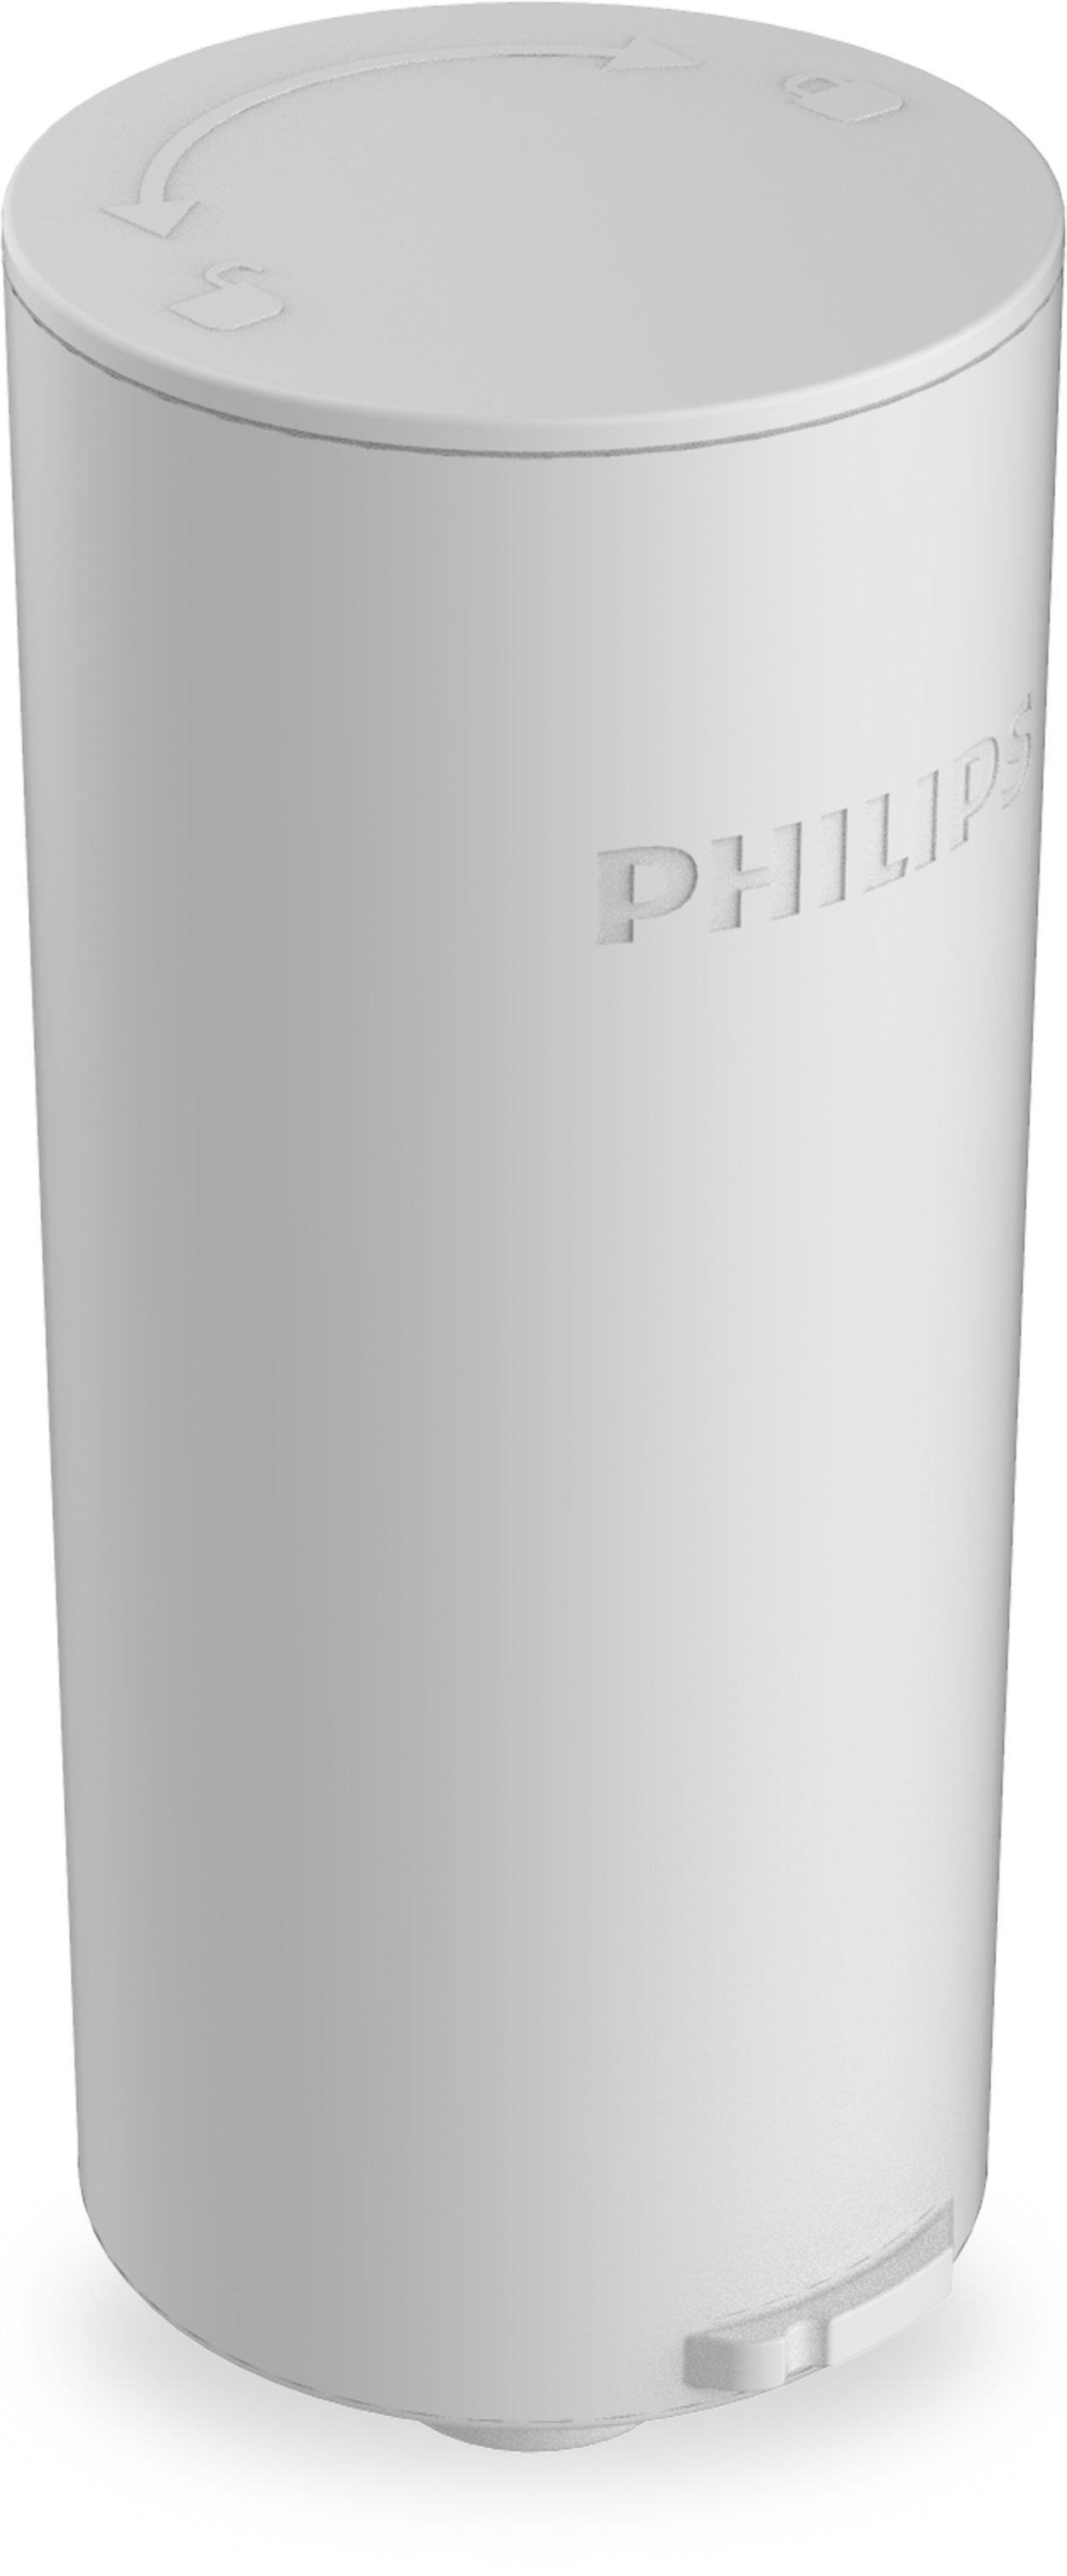 Filtre pour carafe filtrante PHILIPS Instant Water x3 - Super U